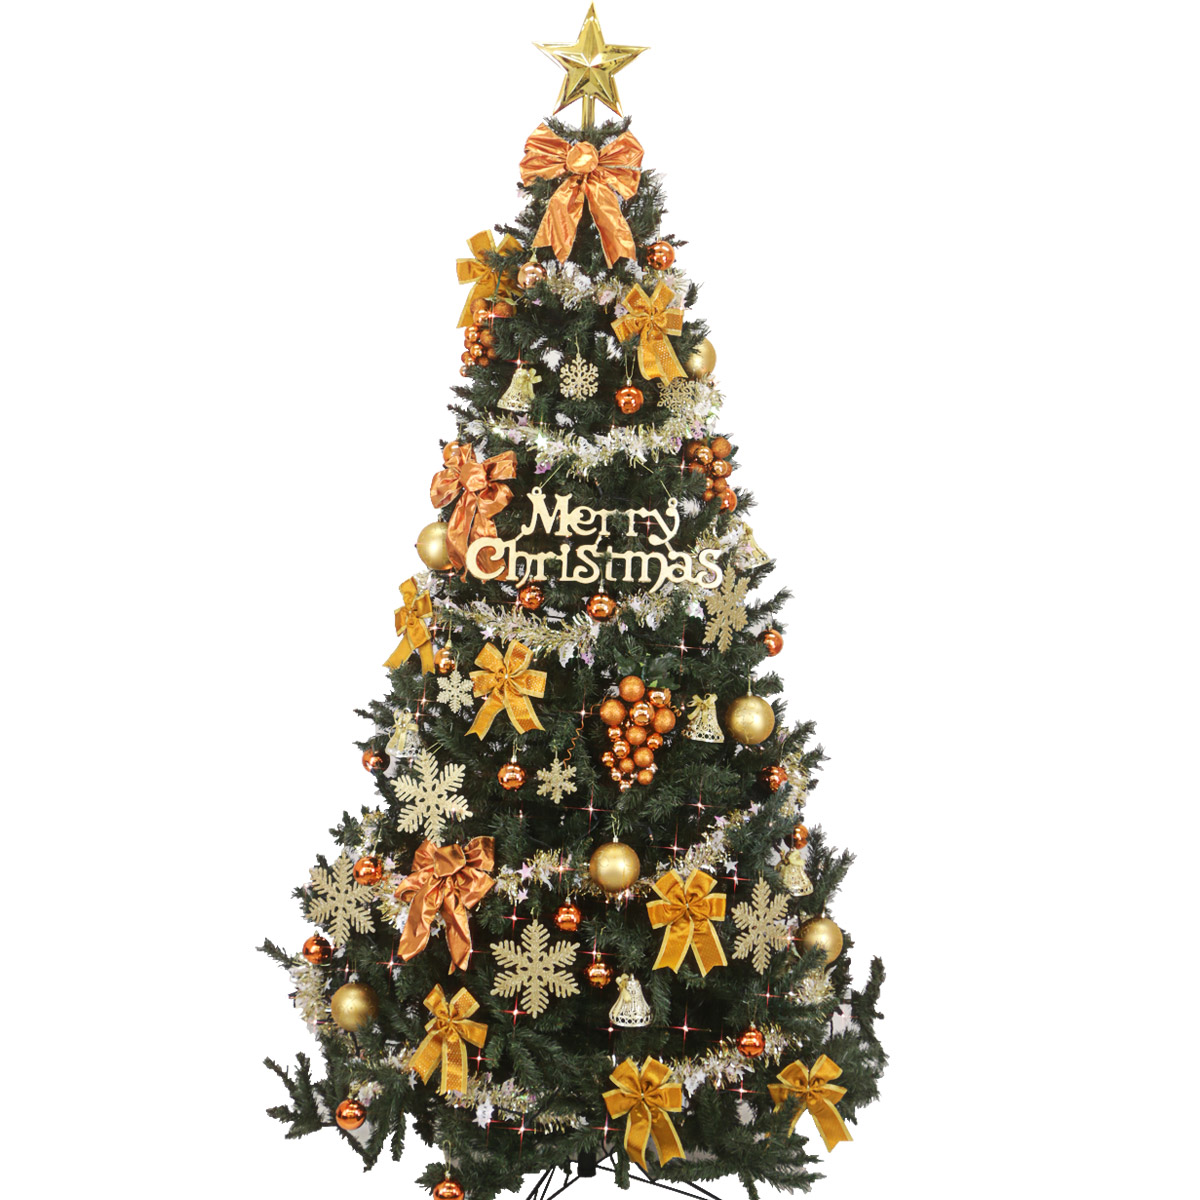 クリスマスツリー セット 3m 300cm Led 300cm コパー 3m Led ゴールド ツリーセット グランデ 大型 業務用 北欧 おしゃれ 2個口